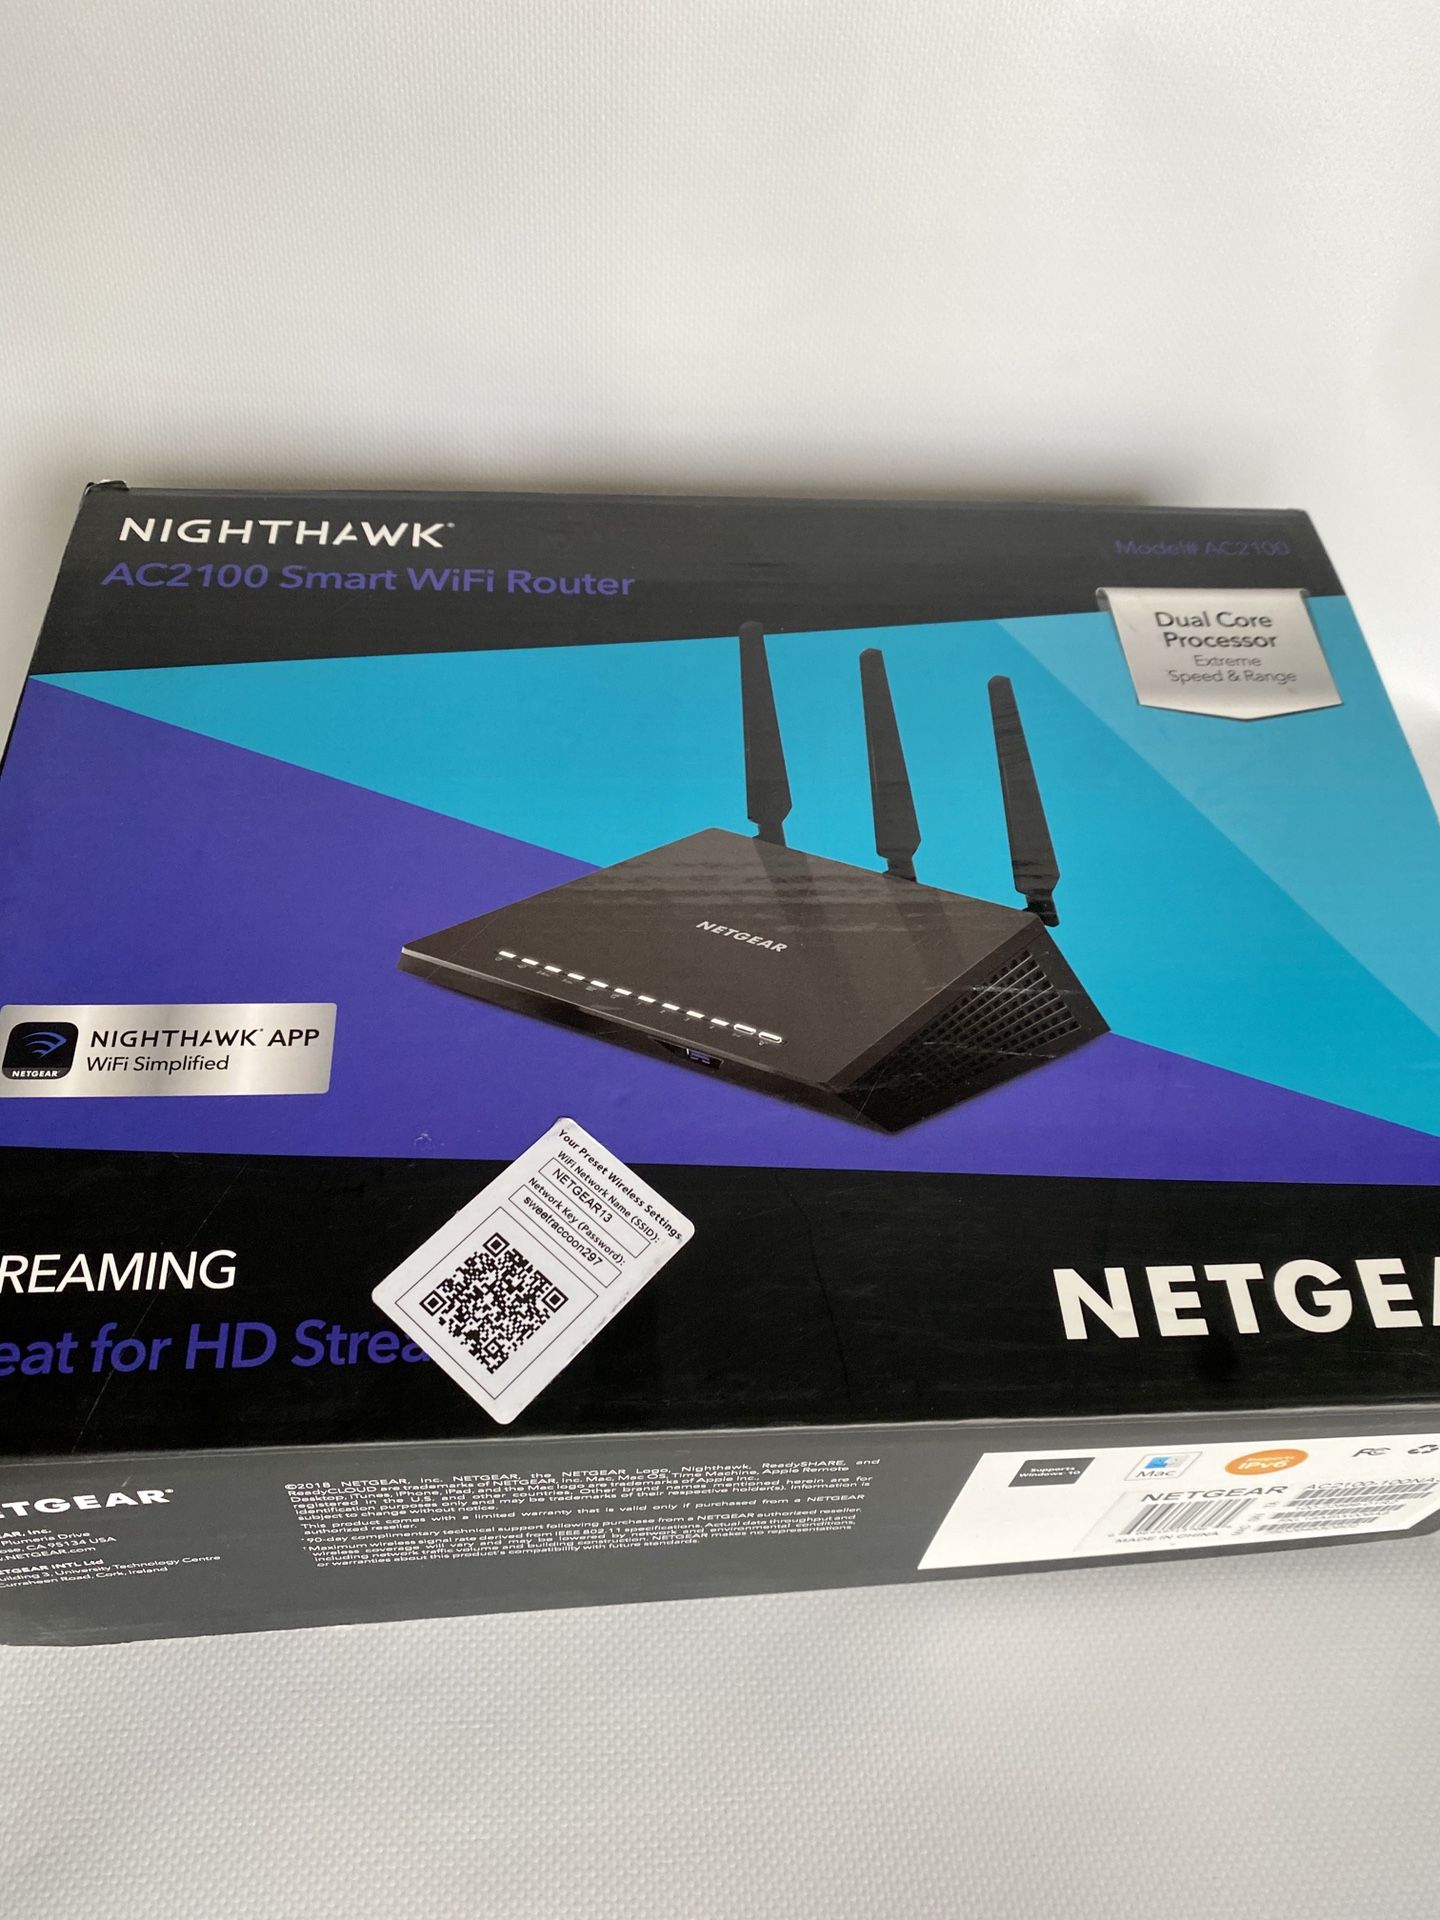 NETGEAR NIGHTHAWK AC2100 Smart WiFi Router